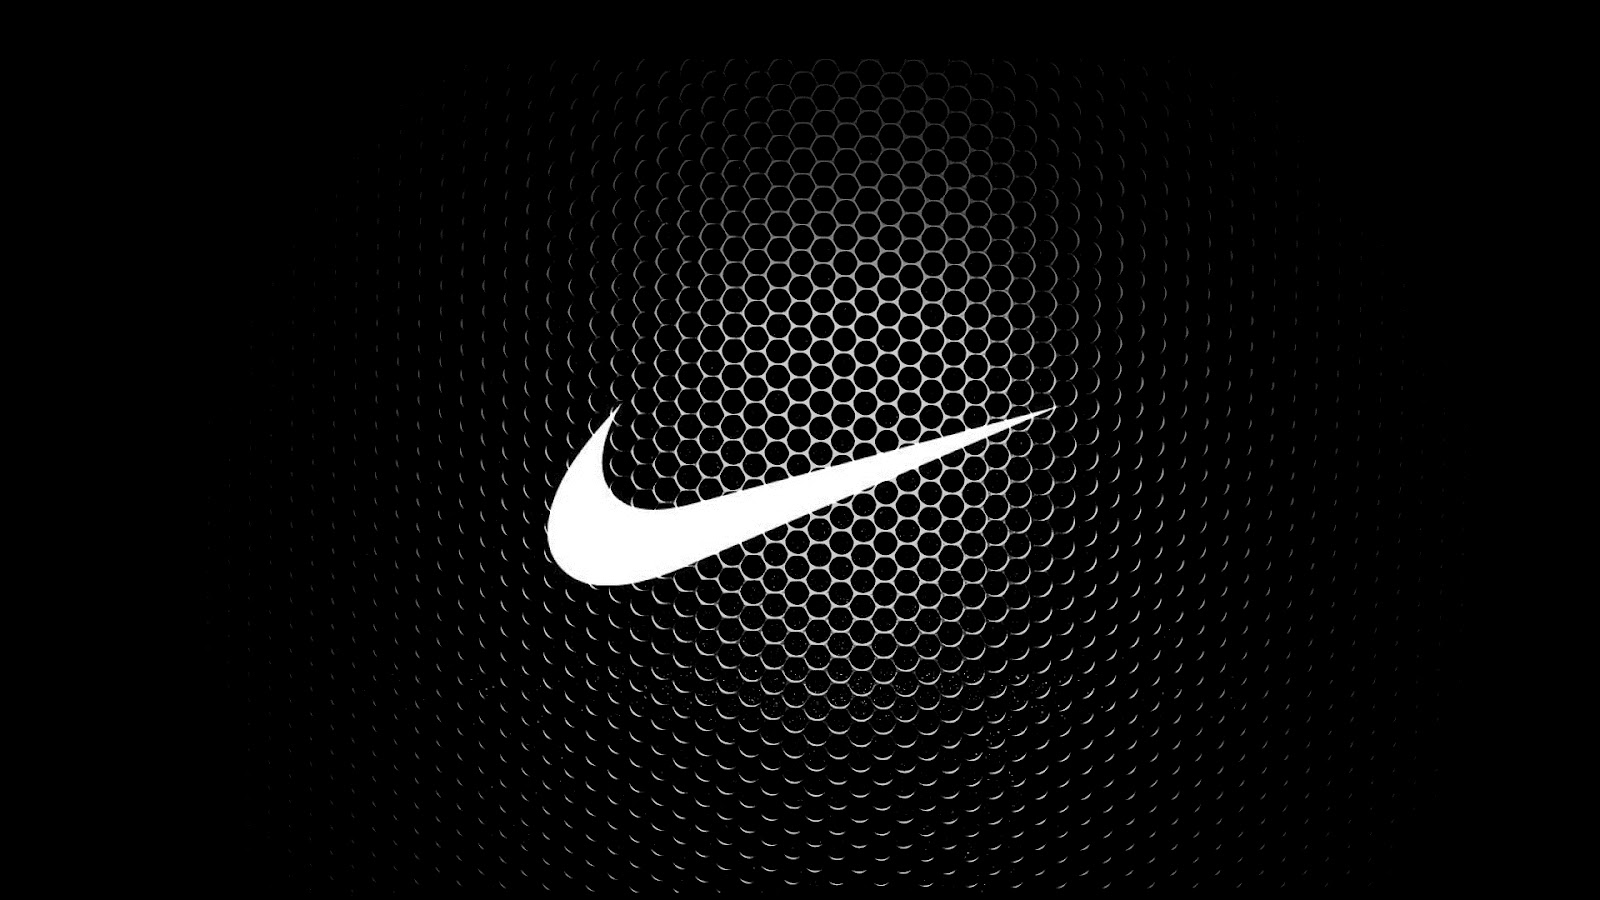 Nike Wallpaper 4K Pc Trick  Fondos de pantalla nike, Papel de